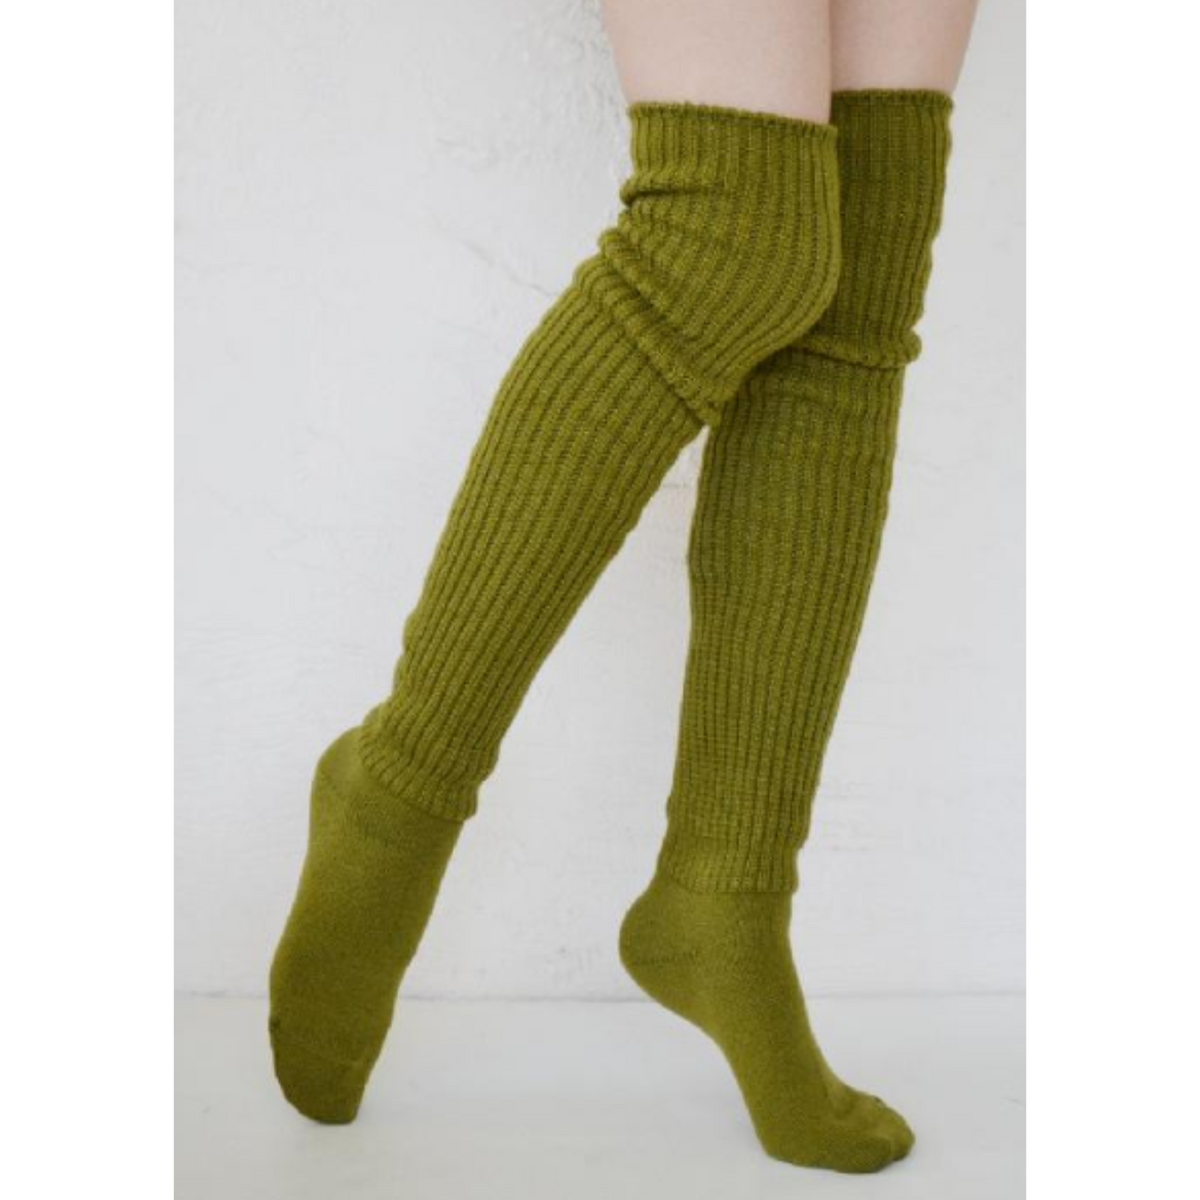 Tabbisocks Scrunchy Over the Knee women&#39;s socks shown in green tea color on model.